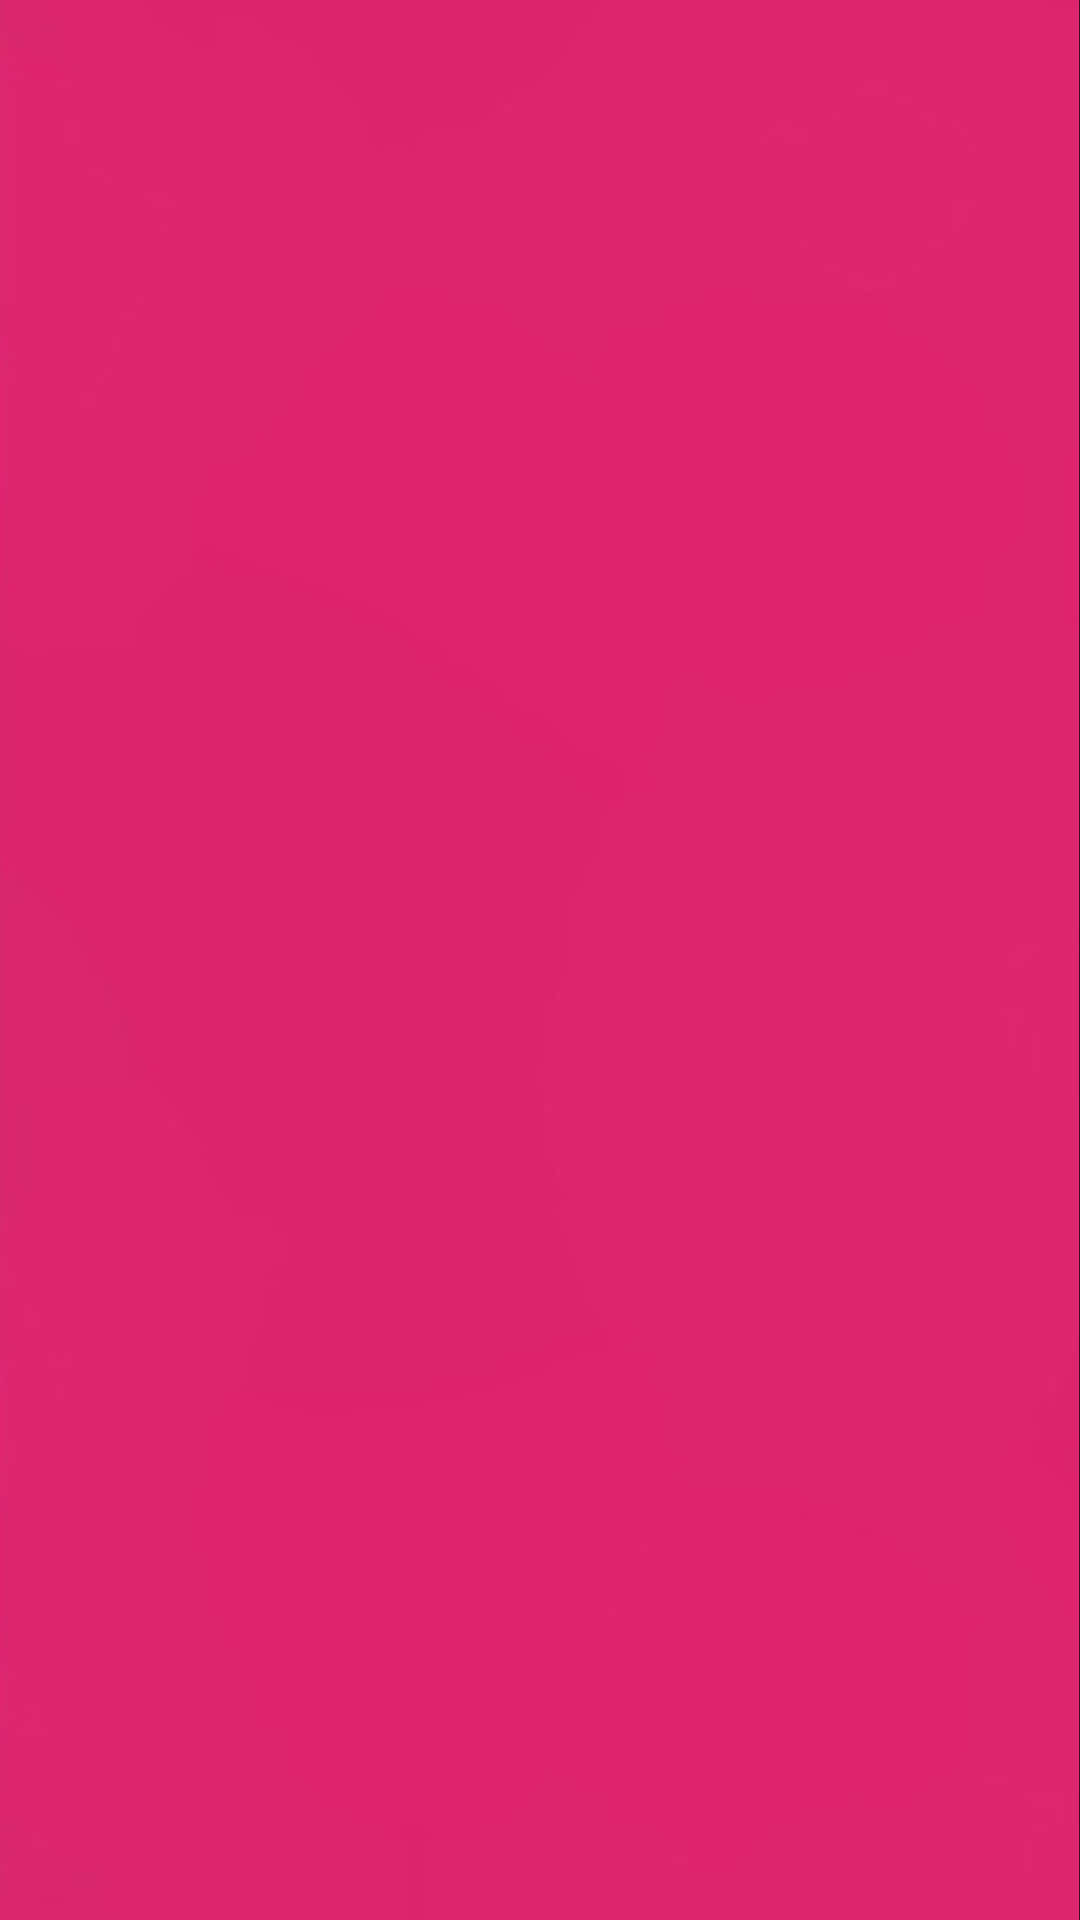 Upptäckskönheten I Enkel Rosa. (discover The Beauty Of Simple Pink - Referring To Computer Or Mobile Wallpaper) Wallpaper